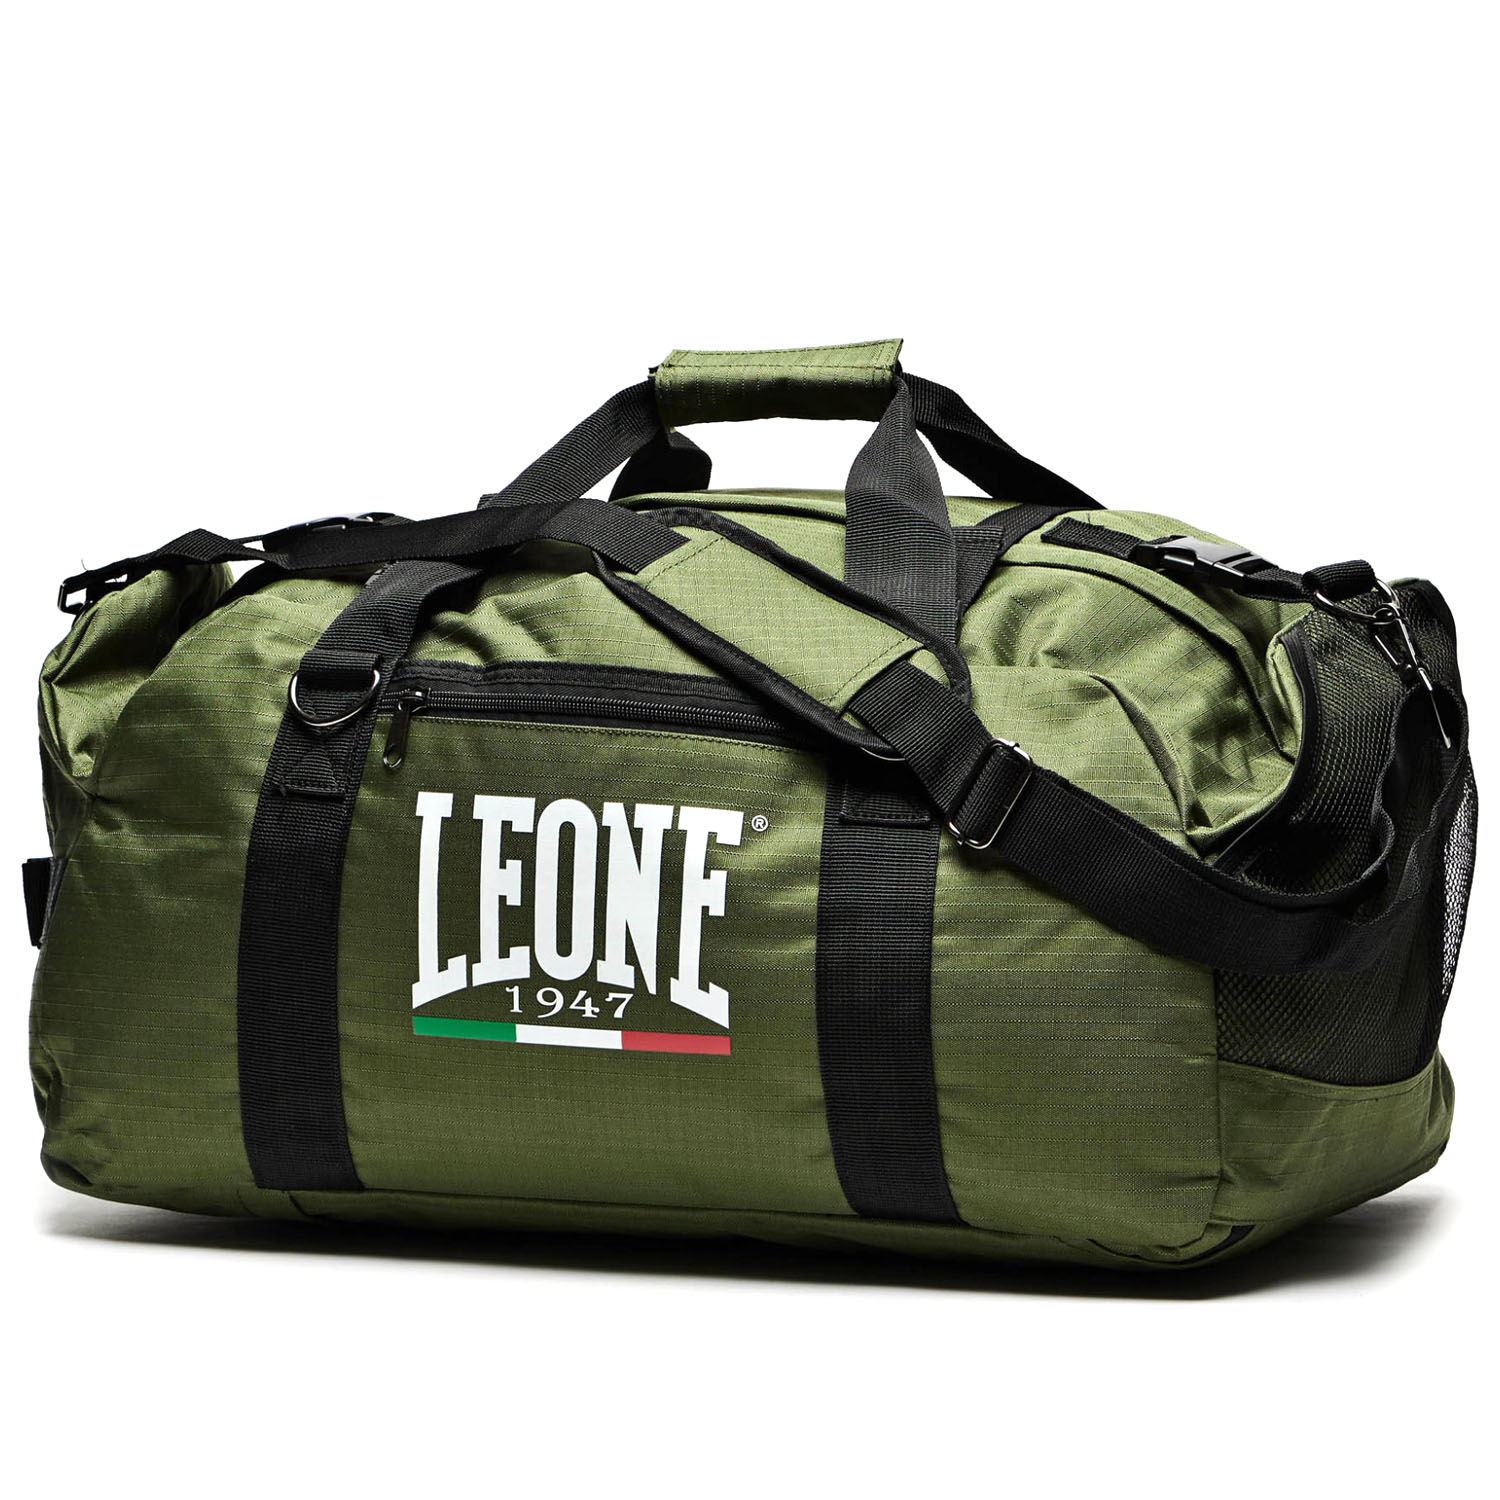 LEONE Sporttasche, Back Pack Bag AC908, olive